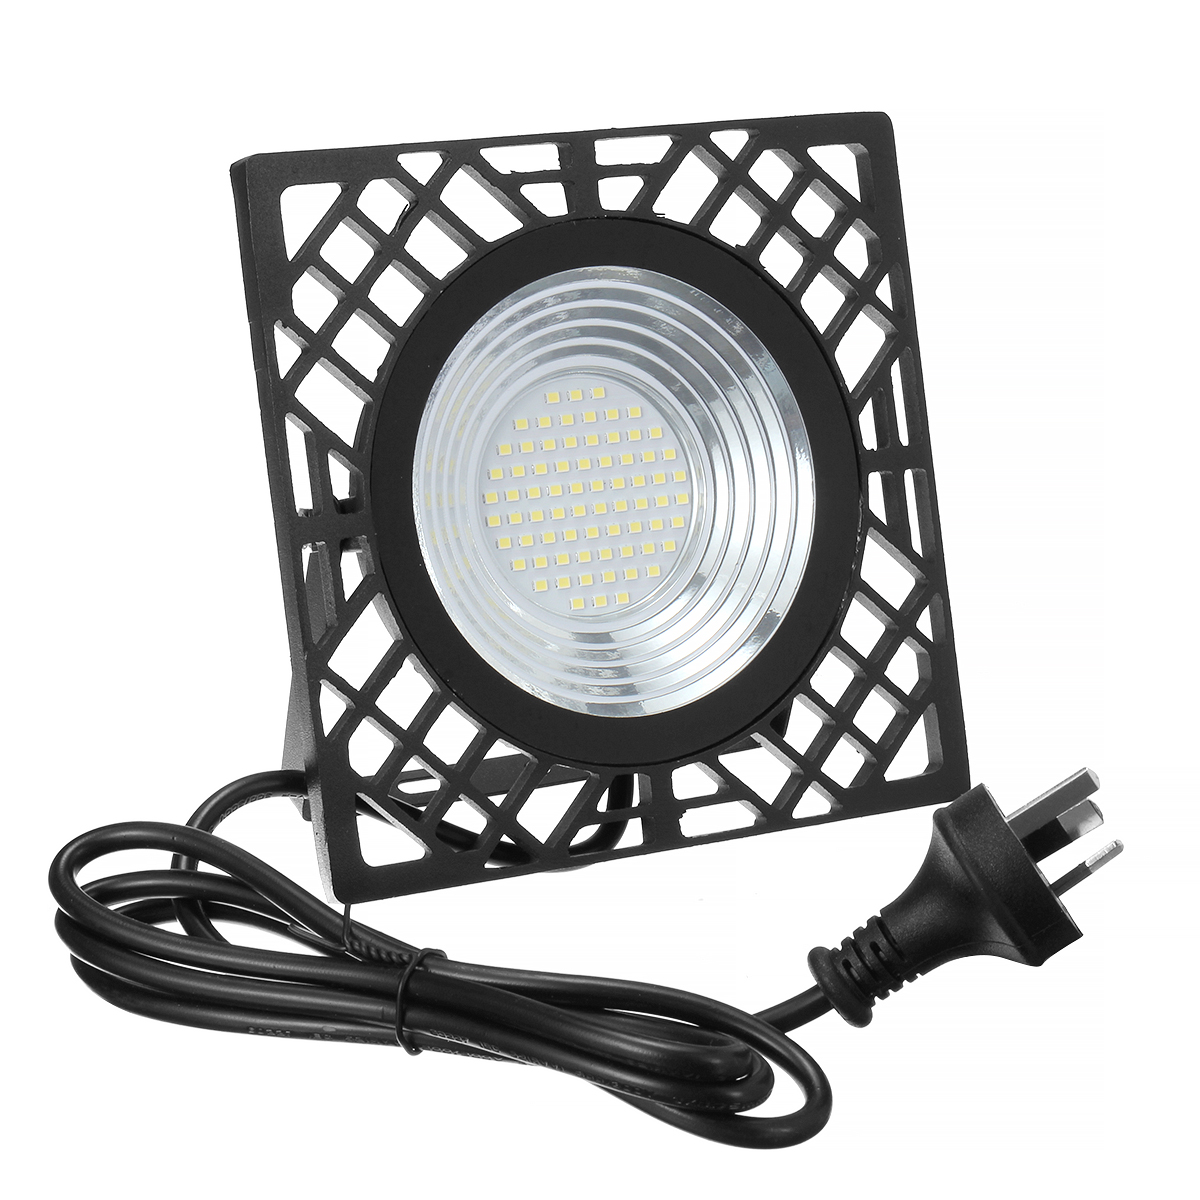 50W-LED-Flood-Light-110V220V--IP65-Waterproof-Outdoor-LED-Lamp-With-Adjustable-Angle-Bracket-Suitabl-1943488-10